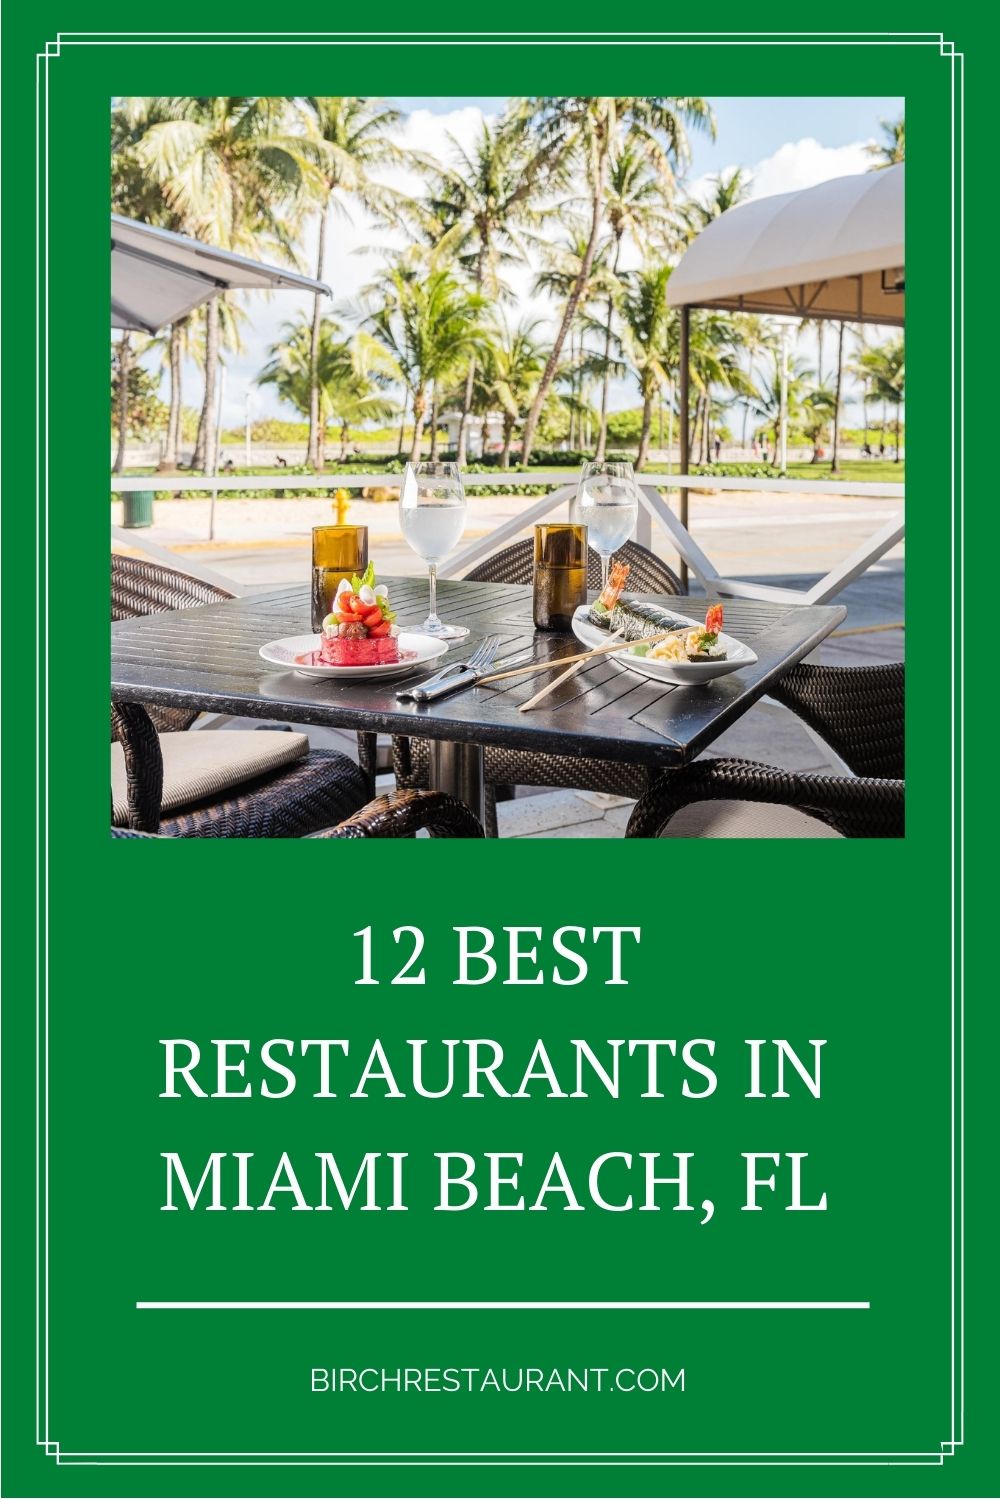 Best Restaurants in Miami Beach